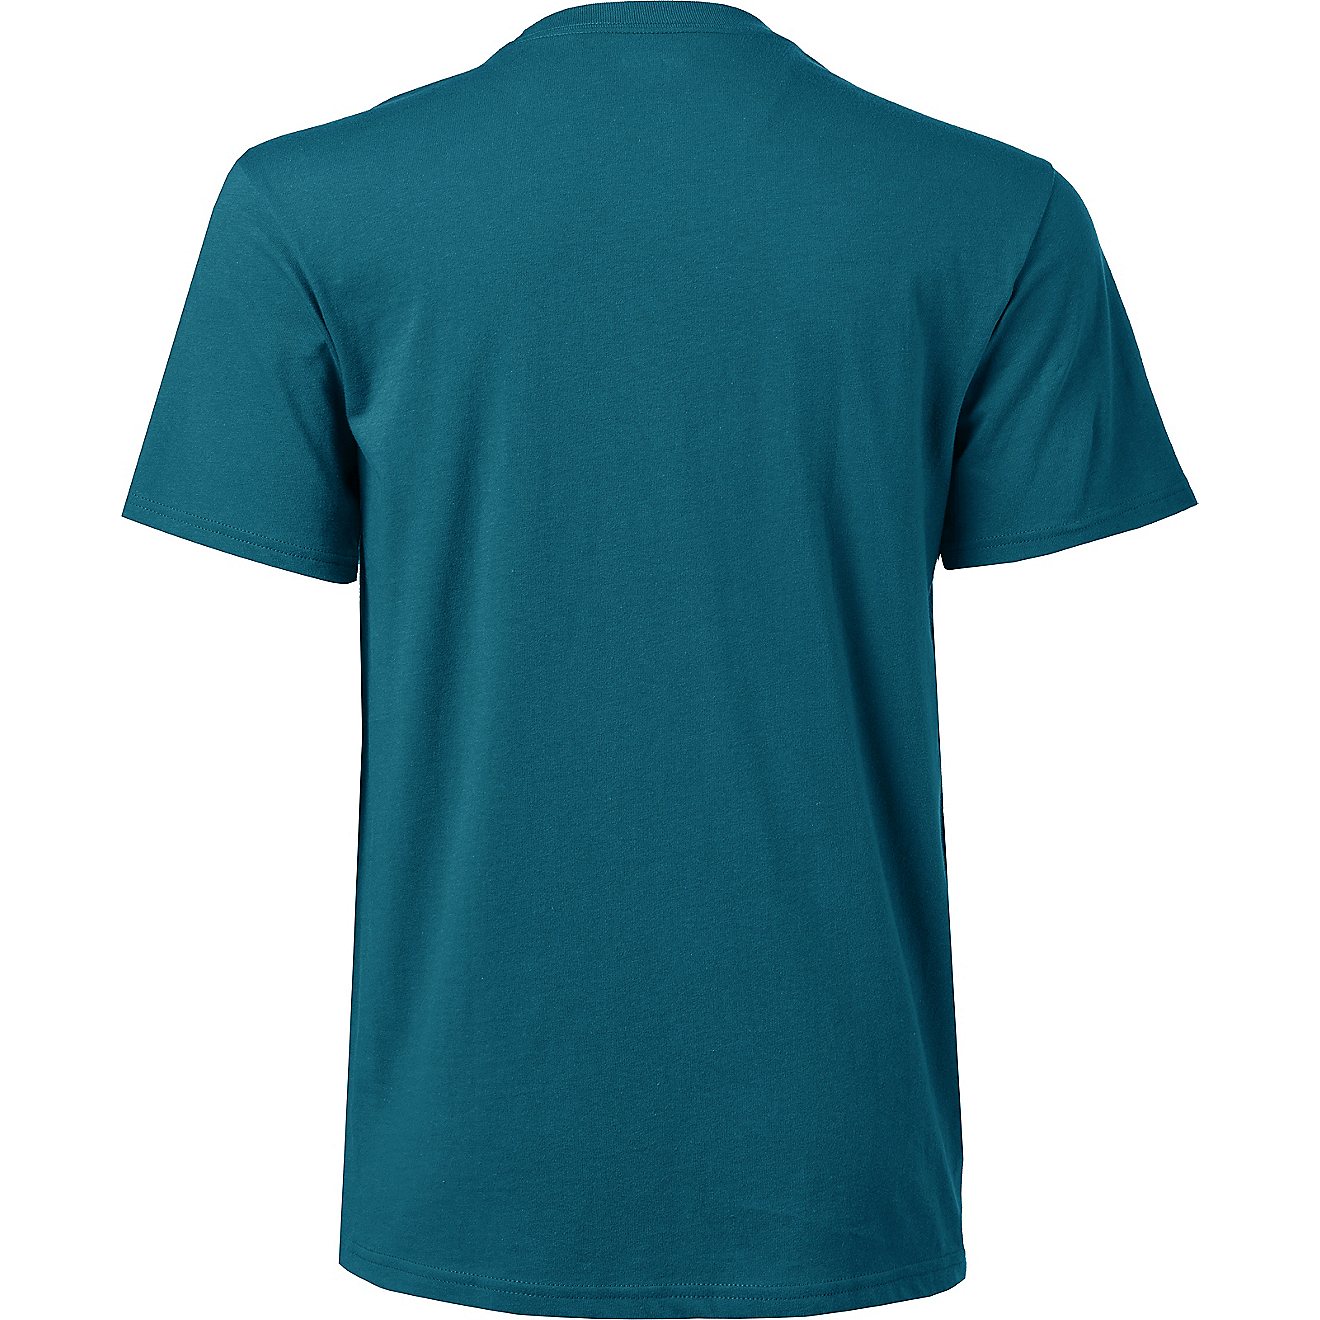 BCG Men's Cotton T-shirt                                                                                                         - view number 2